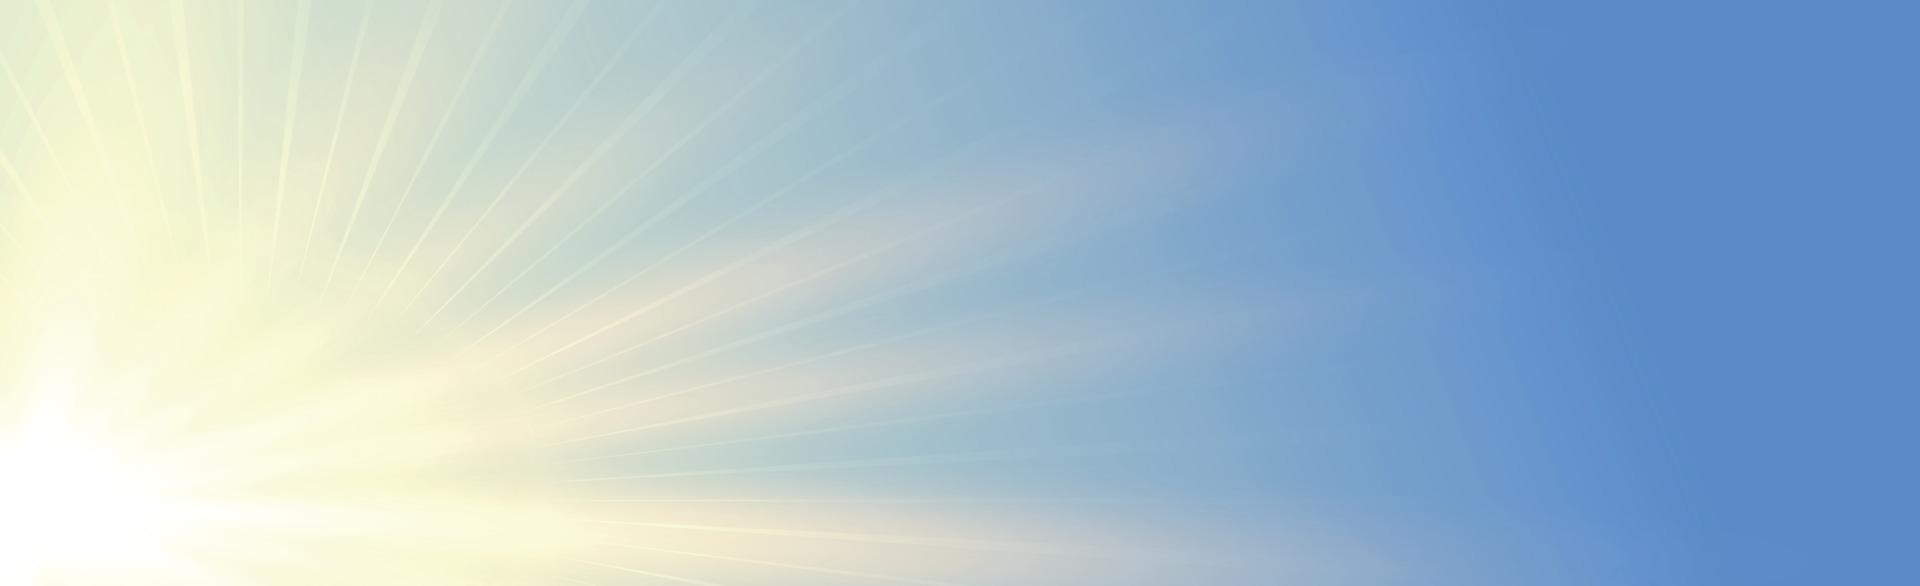 sole splendente su sfondo blu - illustrazione vettore